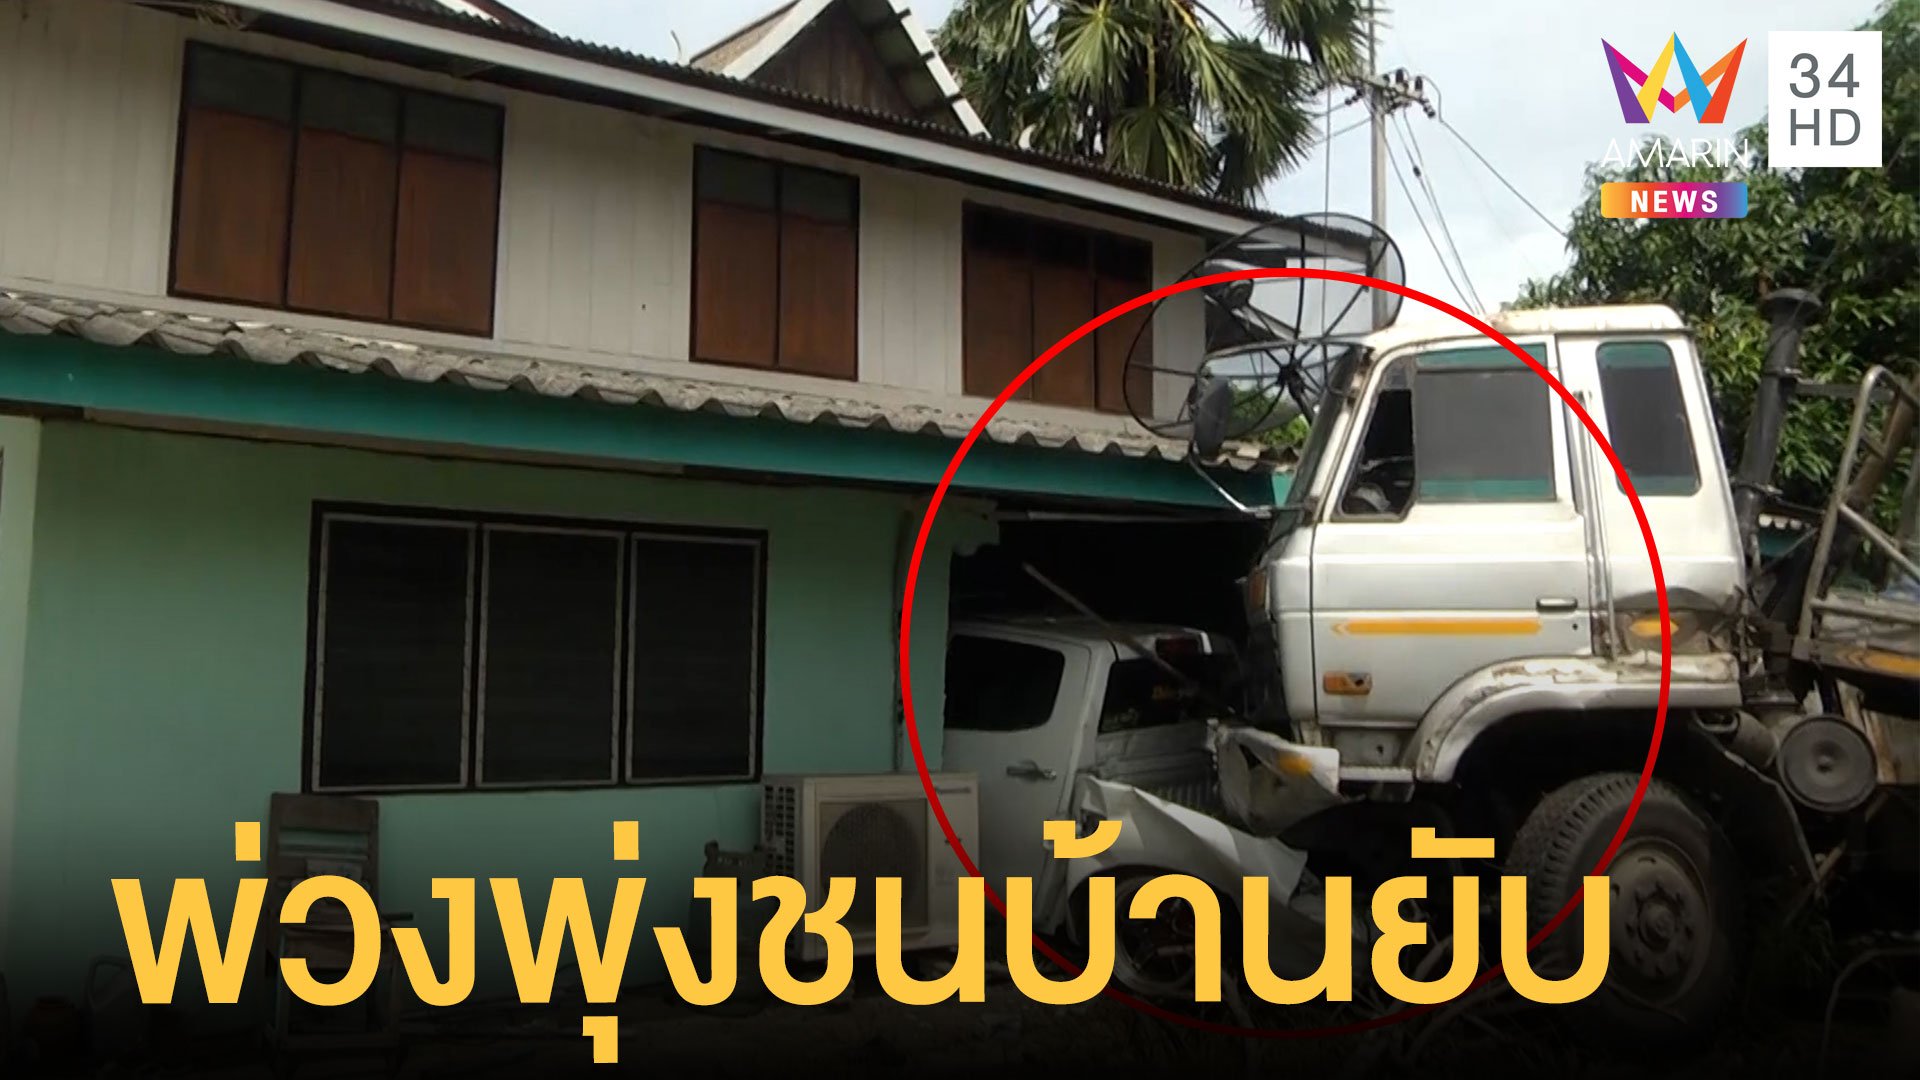 รถพ่วงพุ่งชนบ้านถึงเตียงนอนหวิดถึงคน คนขับรอดปาฏิหาริย์  | ข่าวเที่ยงอมรินทร์ | 1 ก.ค. 65 | AMARIN TVHD34